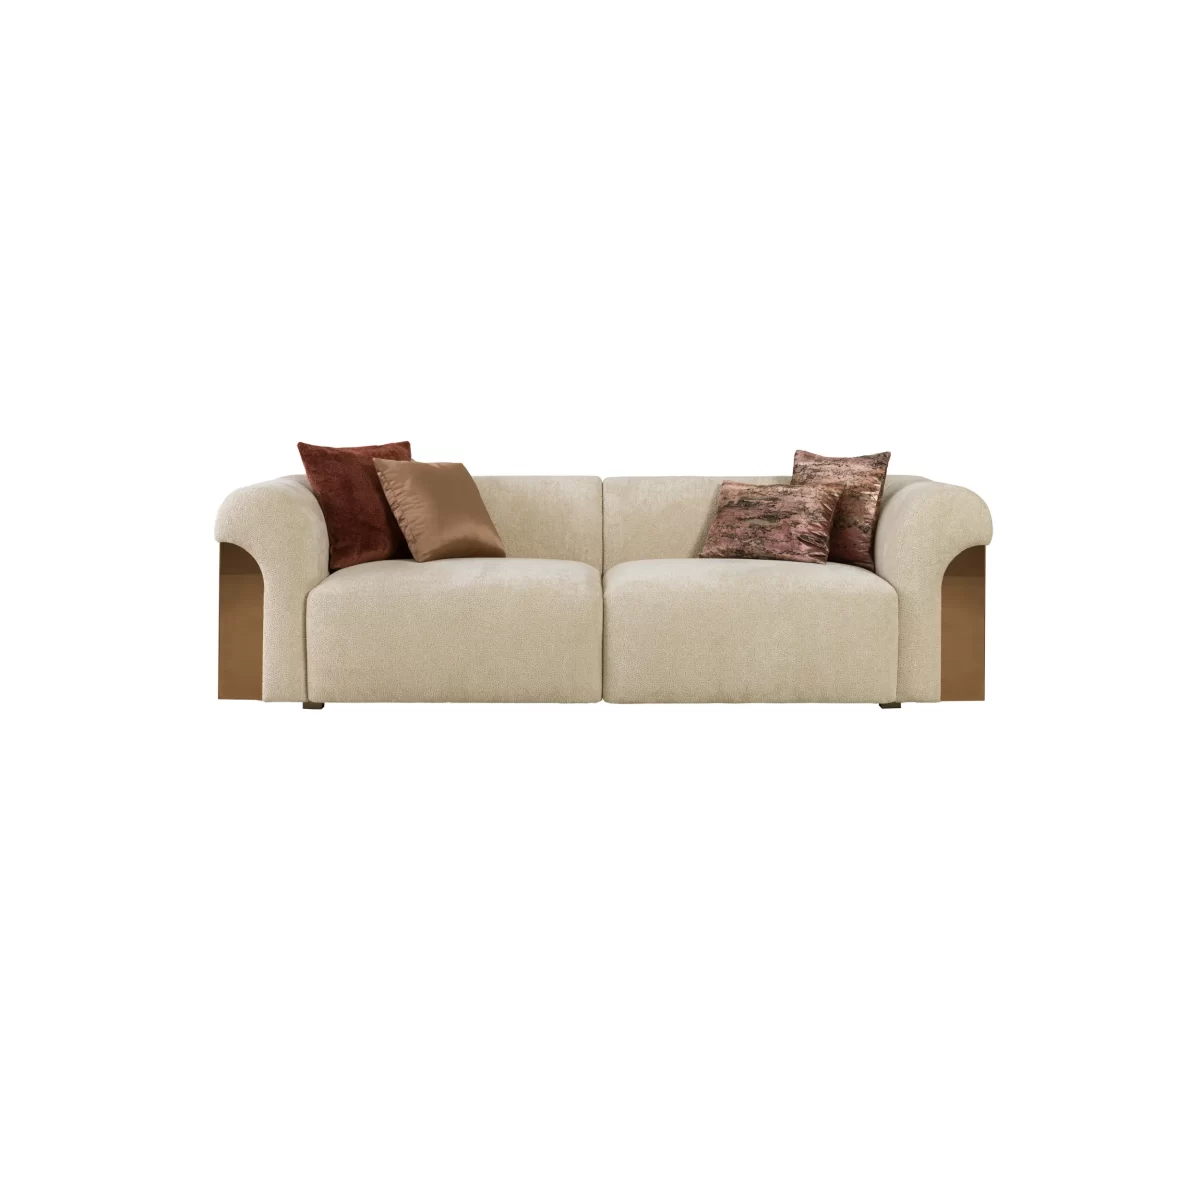 Aerro Sofa Set Premium Living Room Furniture